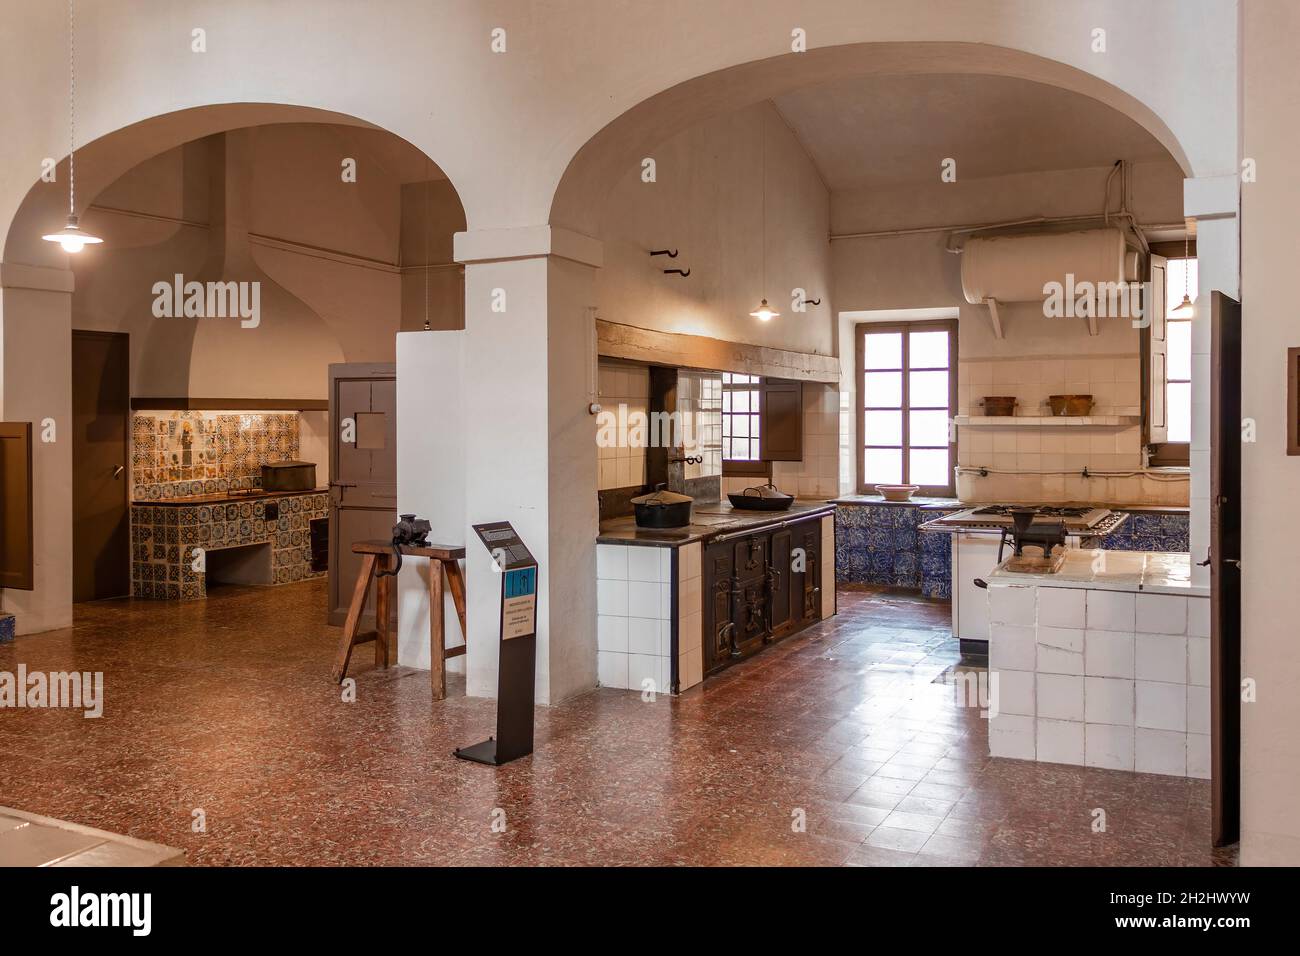 Barcelone, Espagne - 24 septembre 2021 : la cuisine à l'intérieur du monastère de Pedralbes.C'est l'une des zones du monastère qui reflète le mieux les pas Banque D'Images